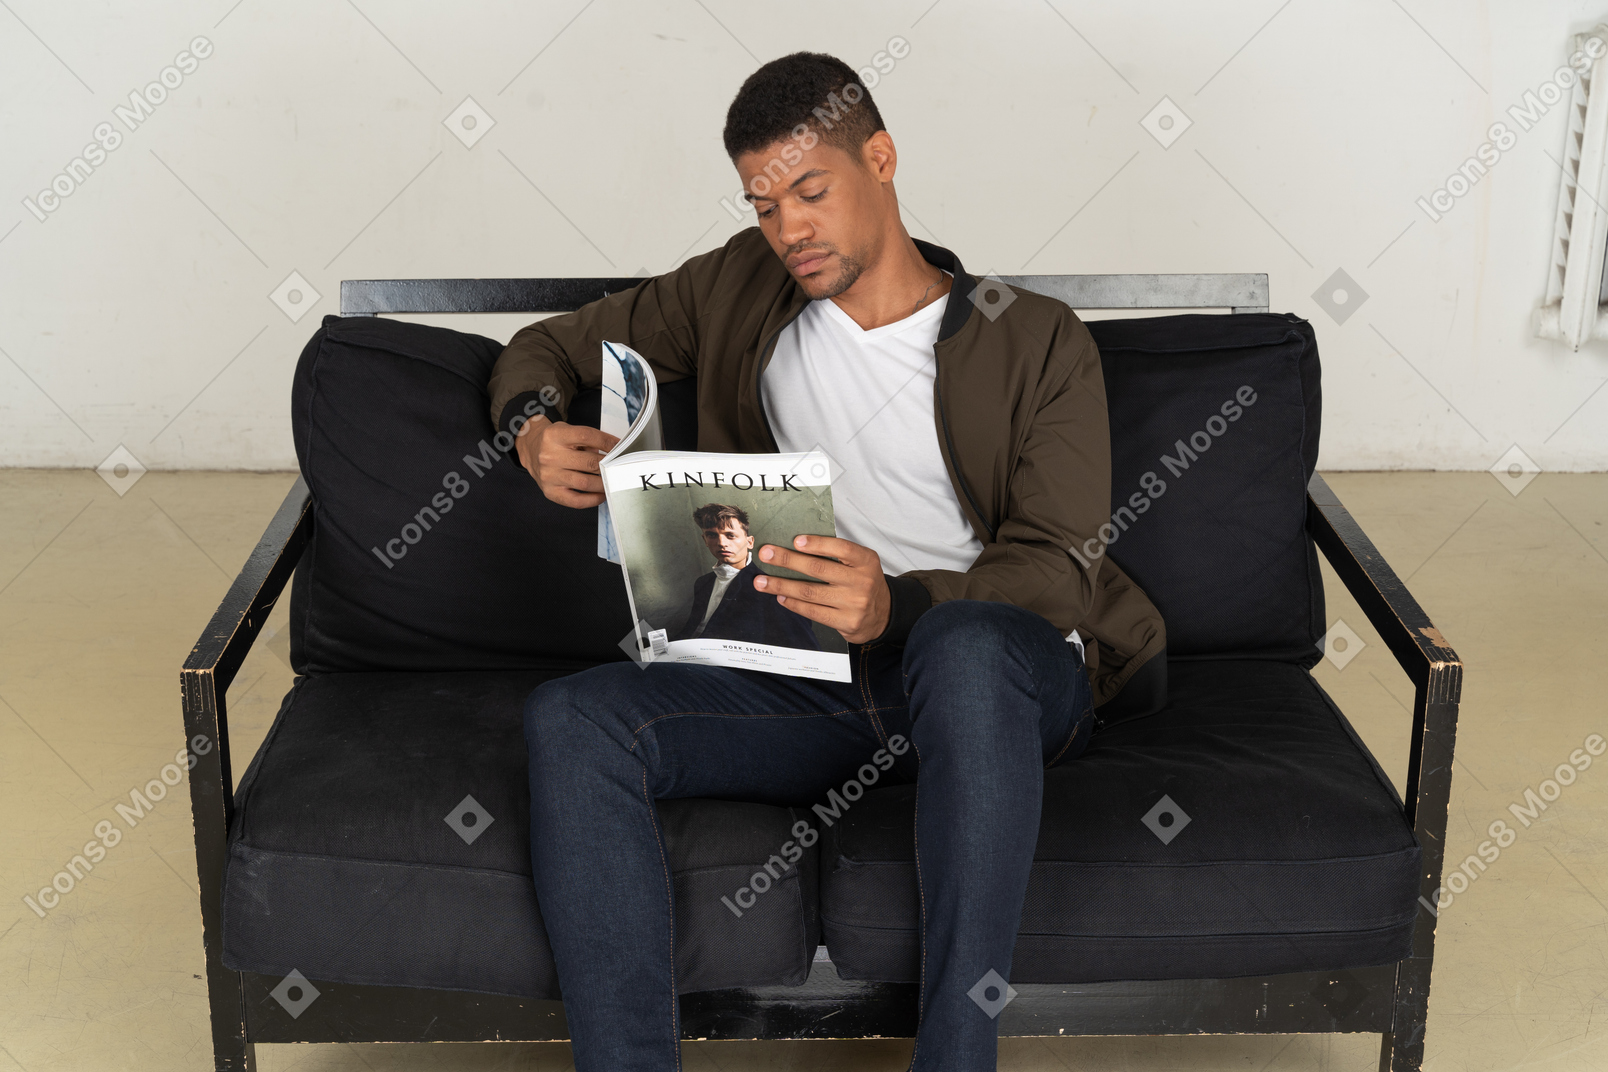 소파에 앉아 잡지를 들고 아름 다운 젊은 남자